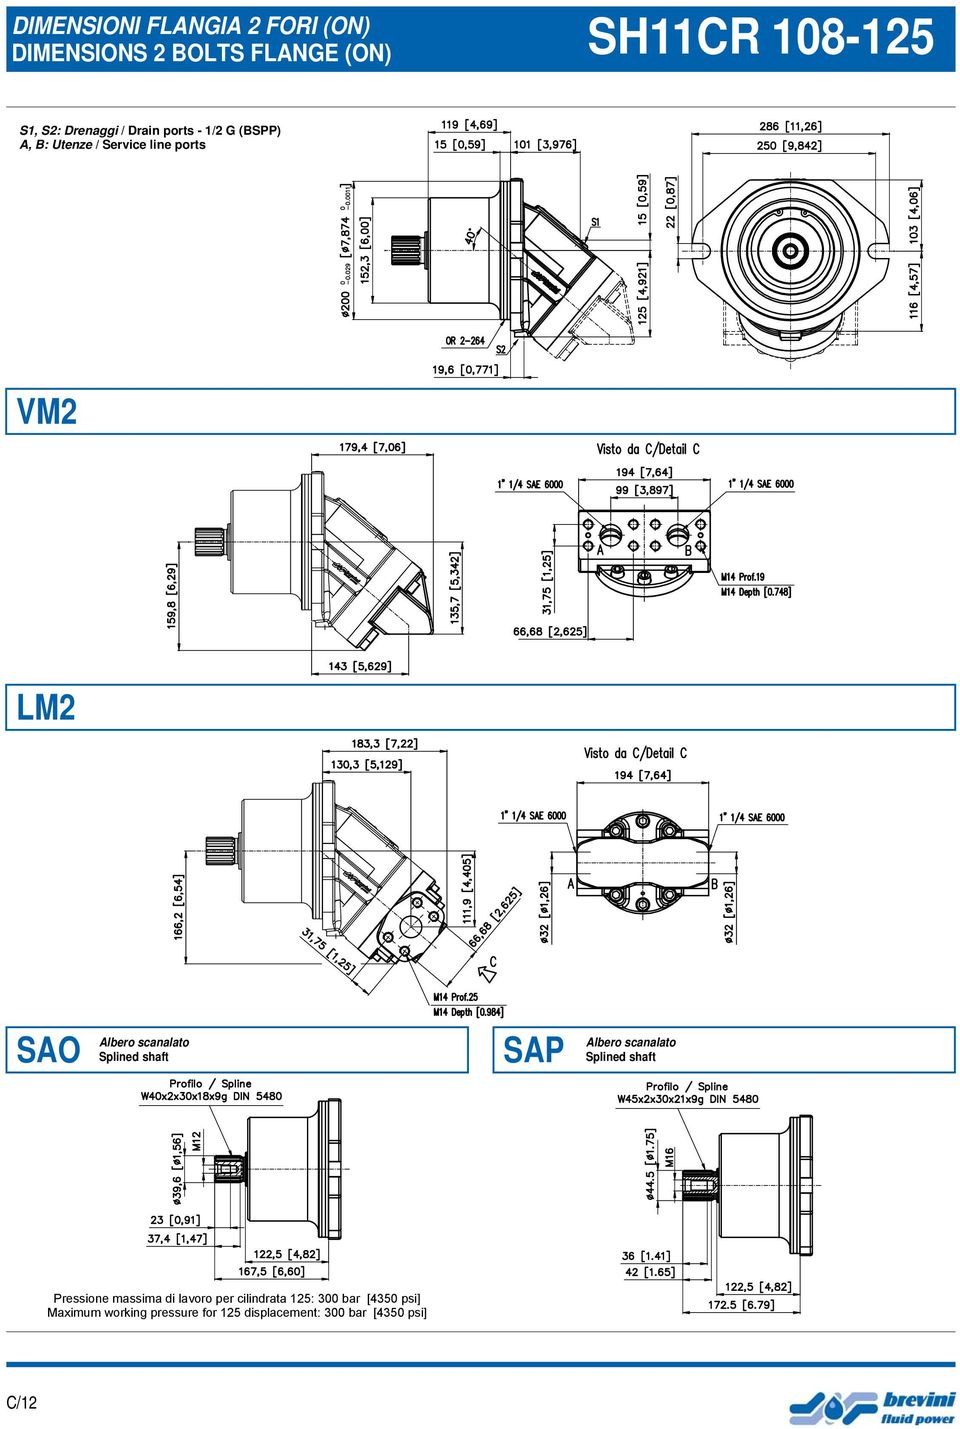 Service line ports SAO SAP Pressione massima di lavoro per cilindrata 125: